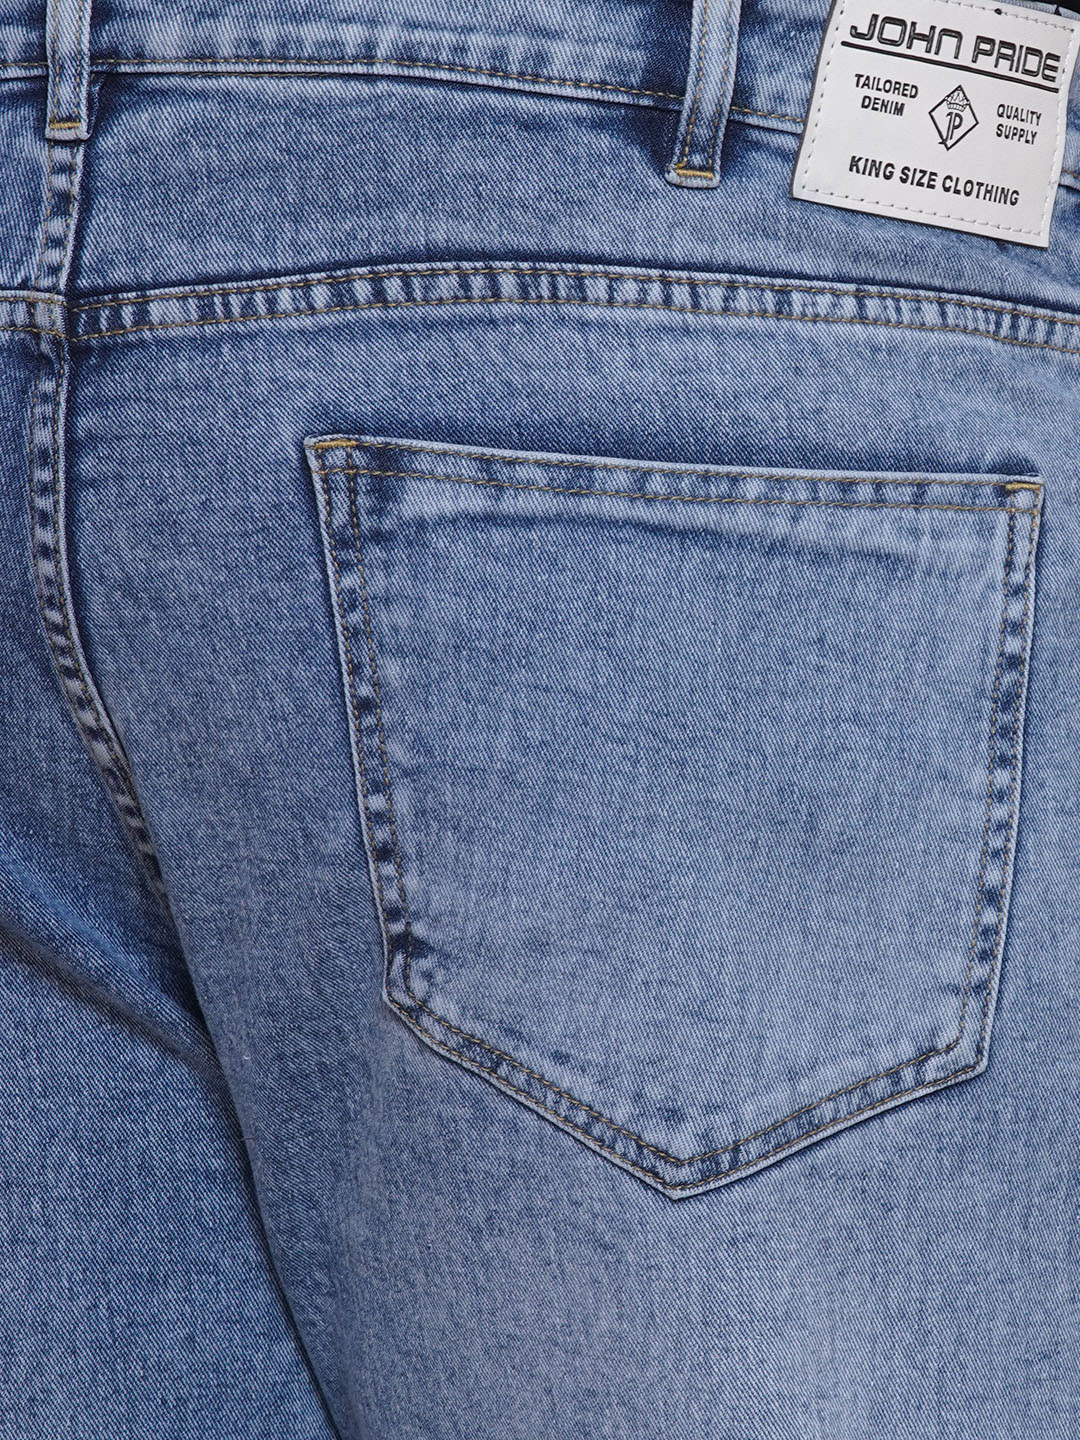 bottomwear/jeans/JPJ27002/jpj27002-2.jpg